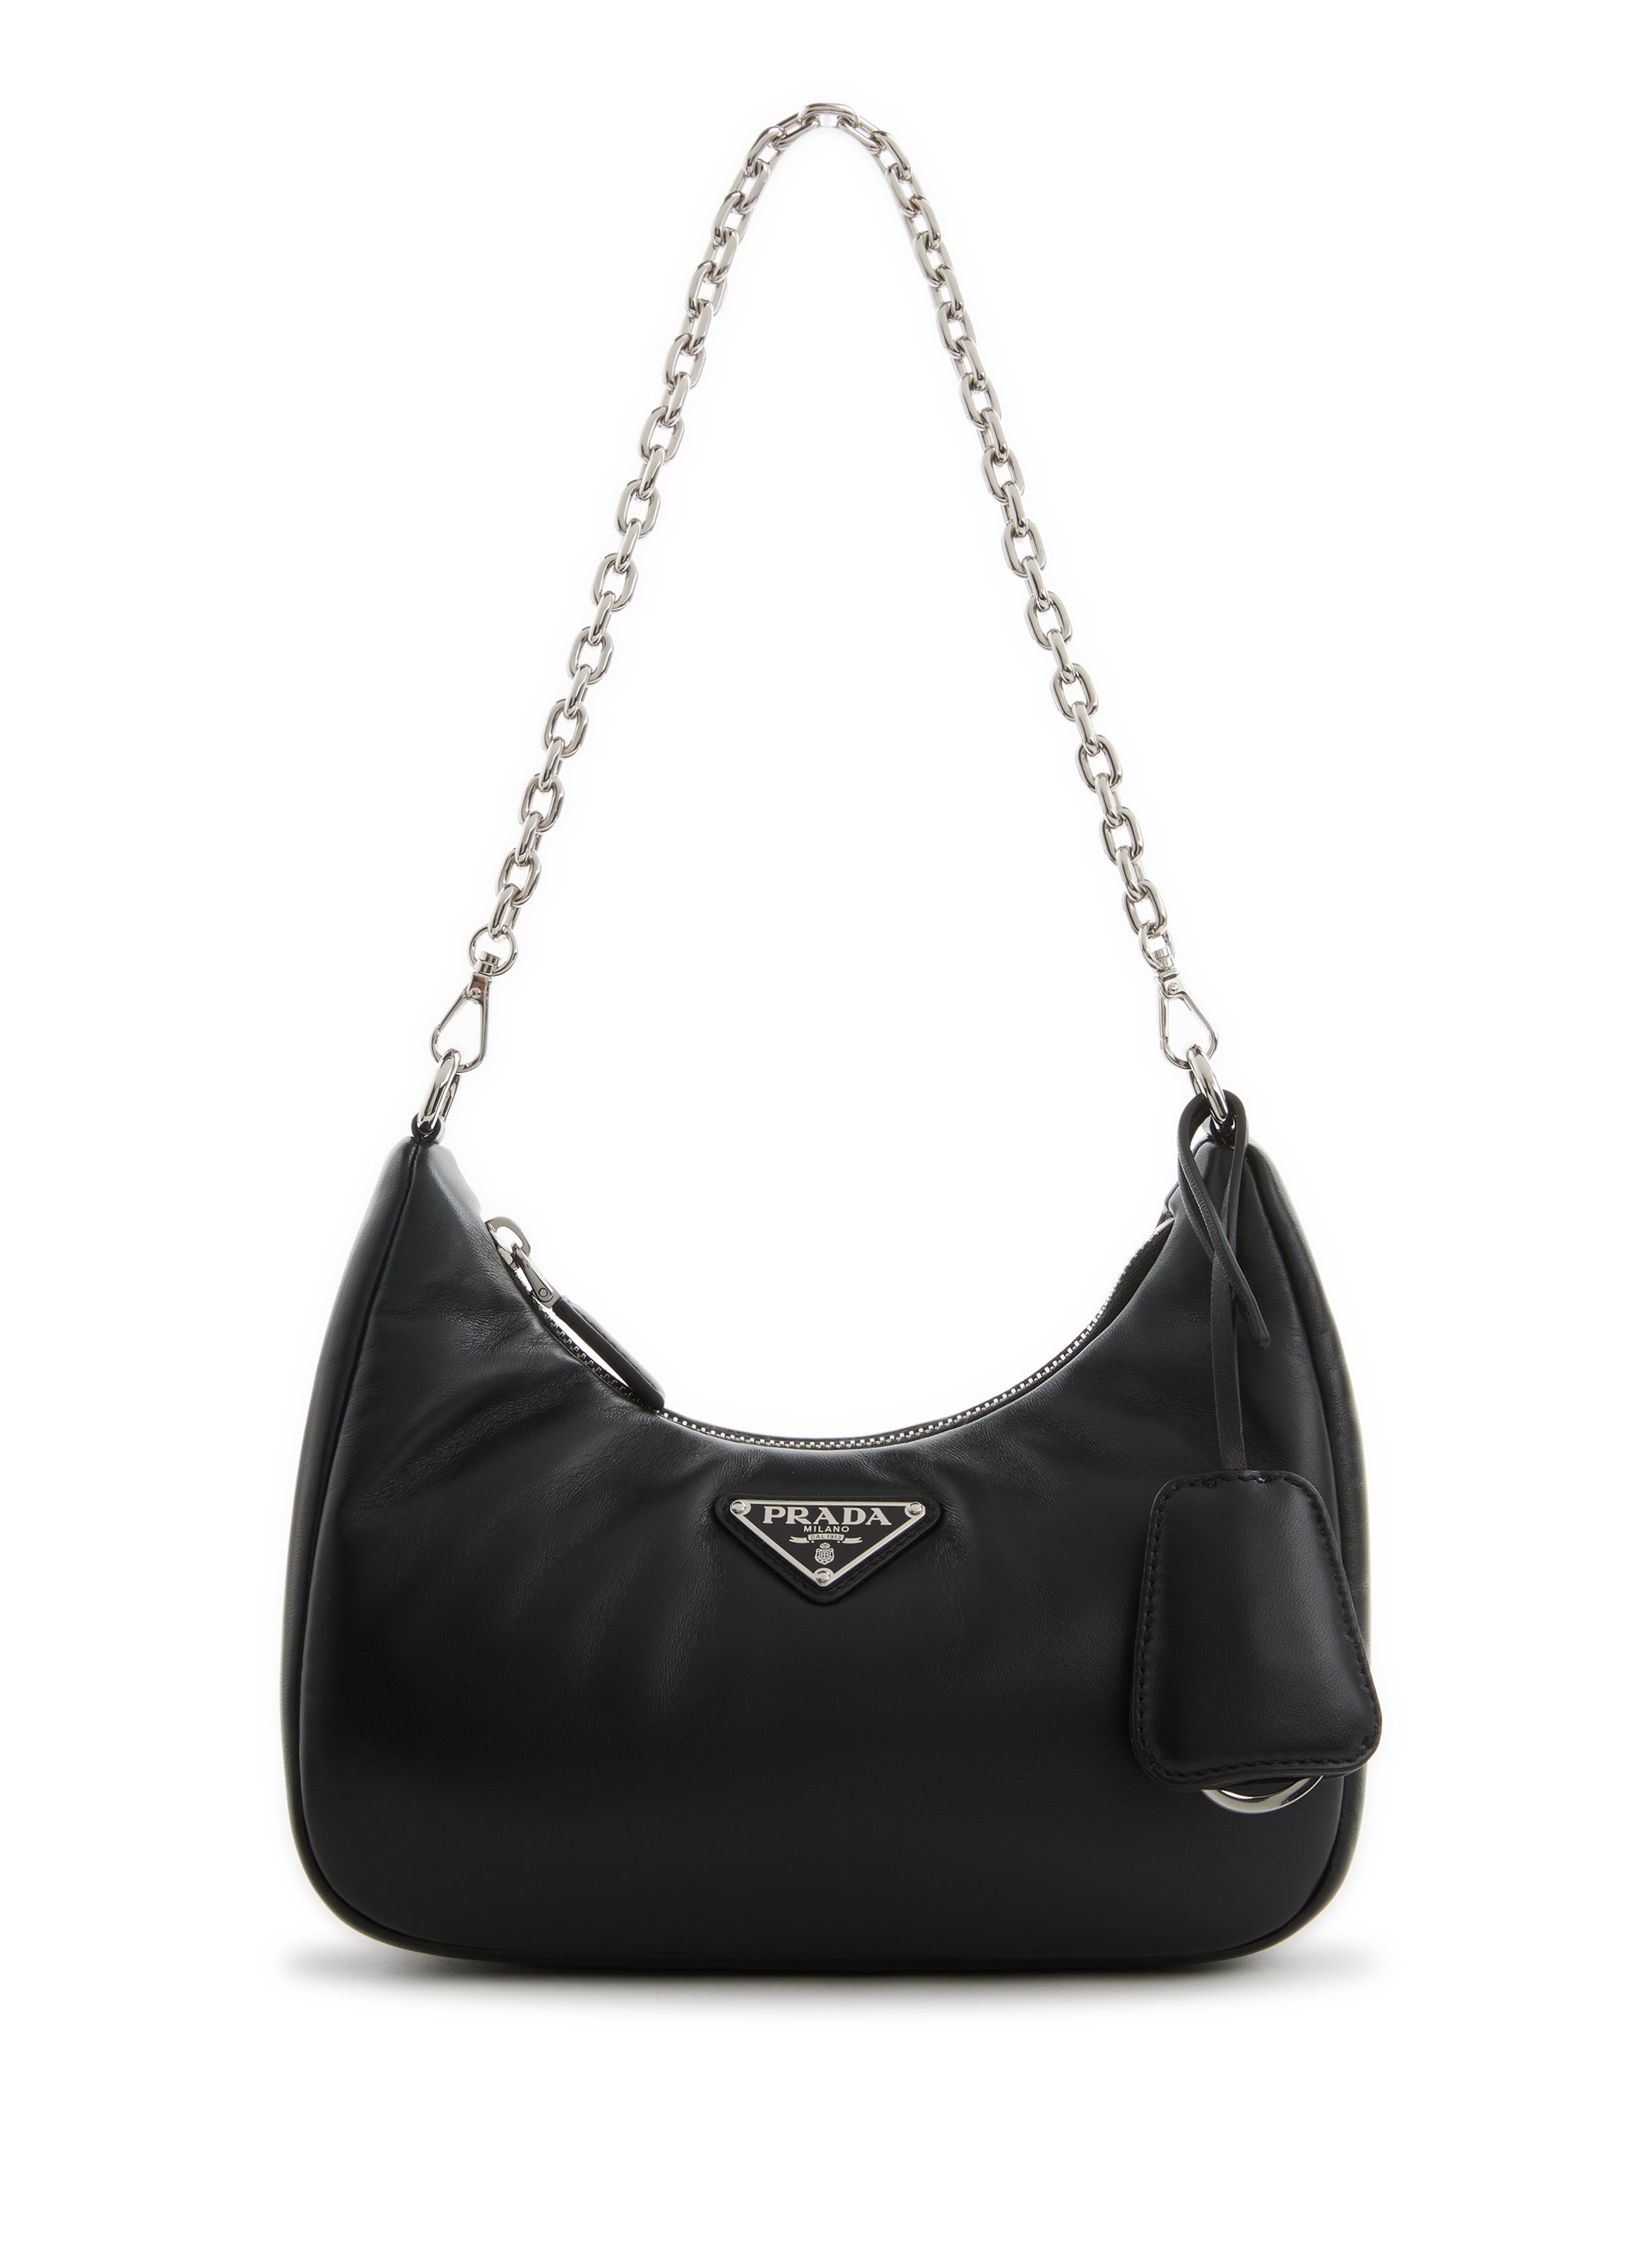 Prada Leather Tote Bag (Totes) IFCHIC.COM